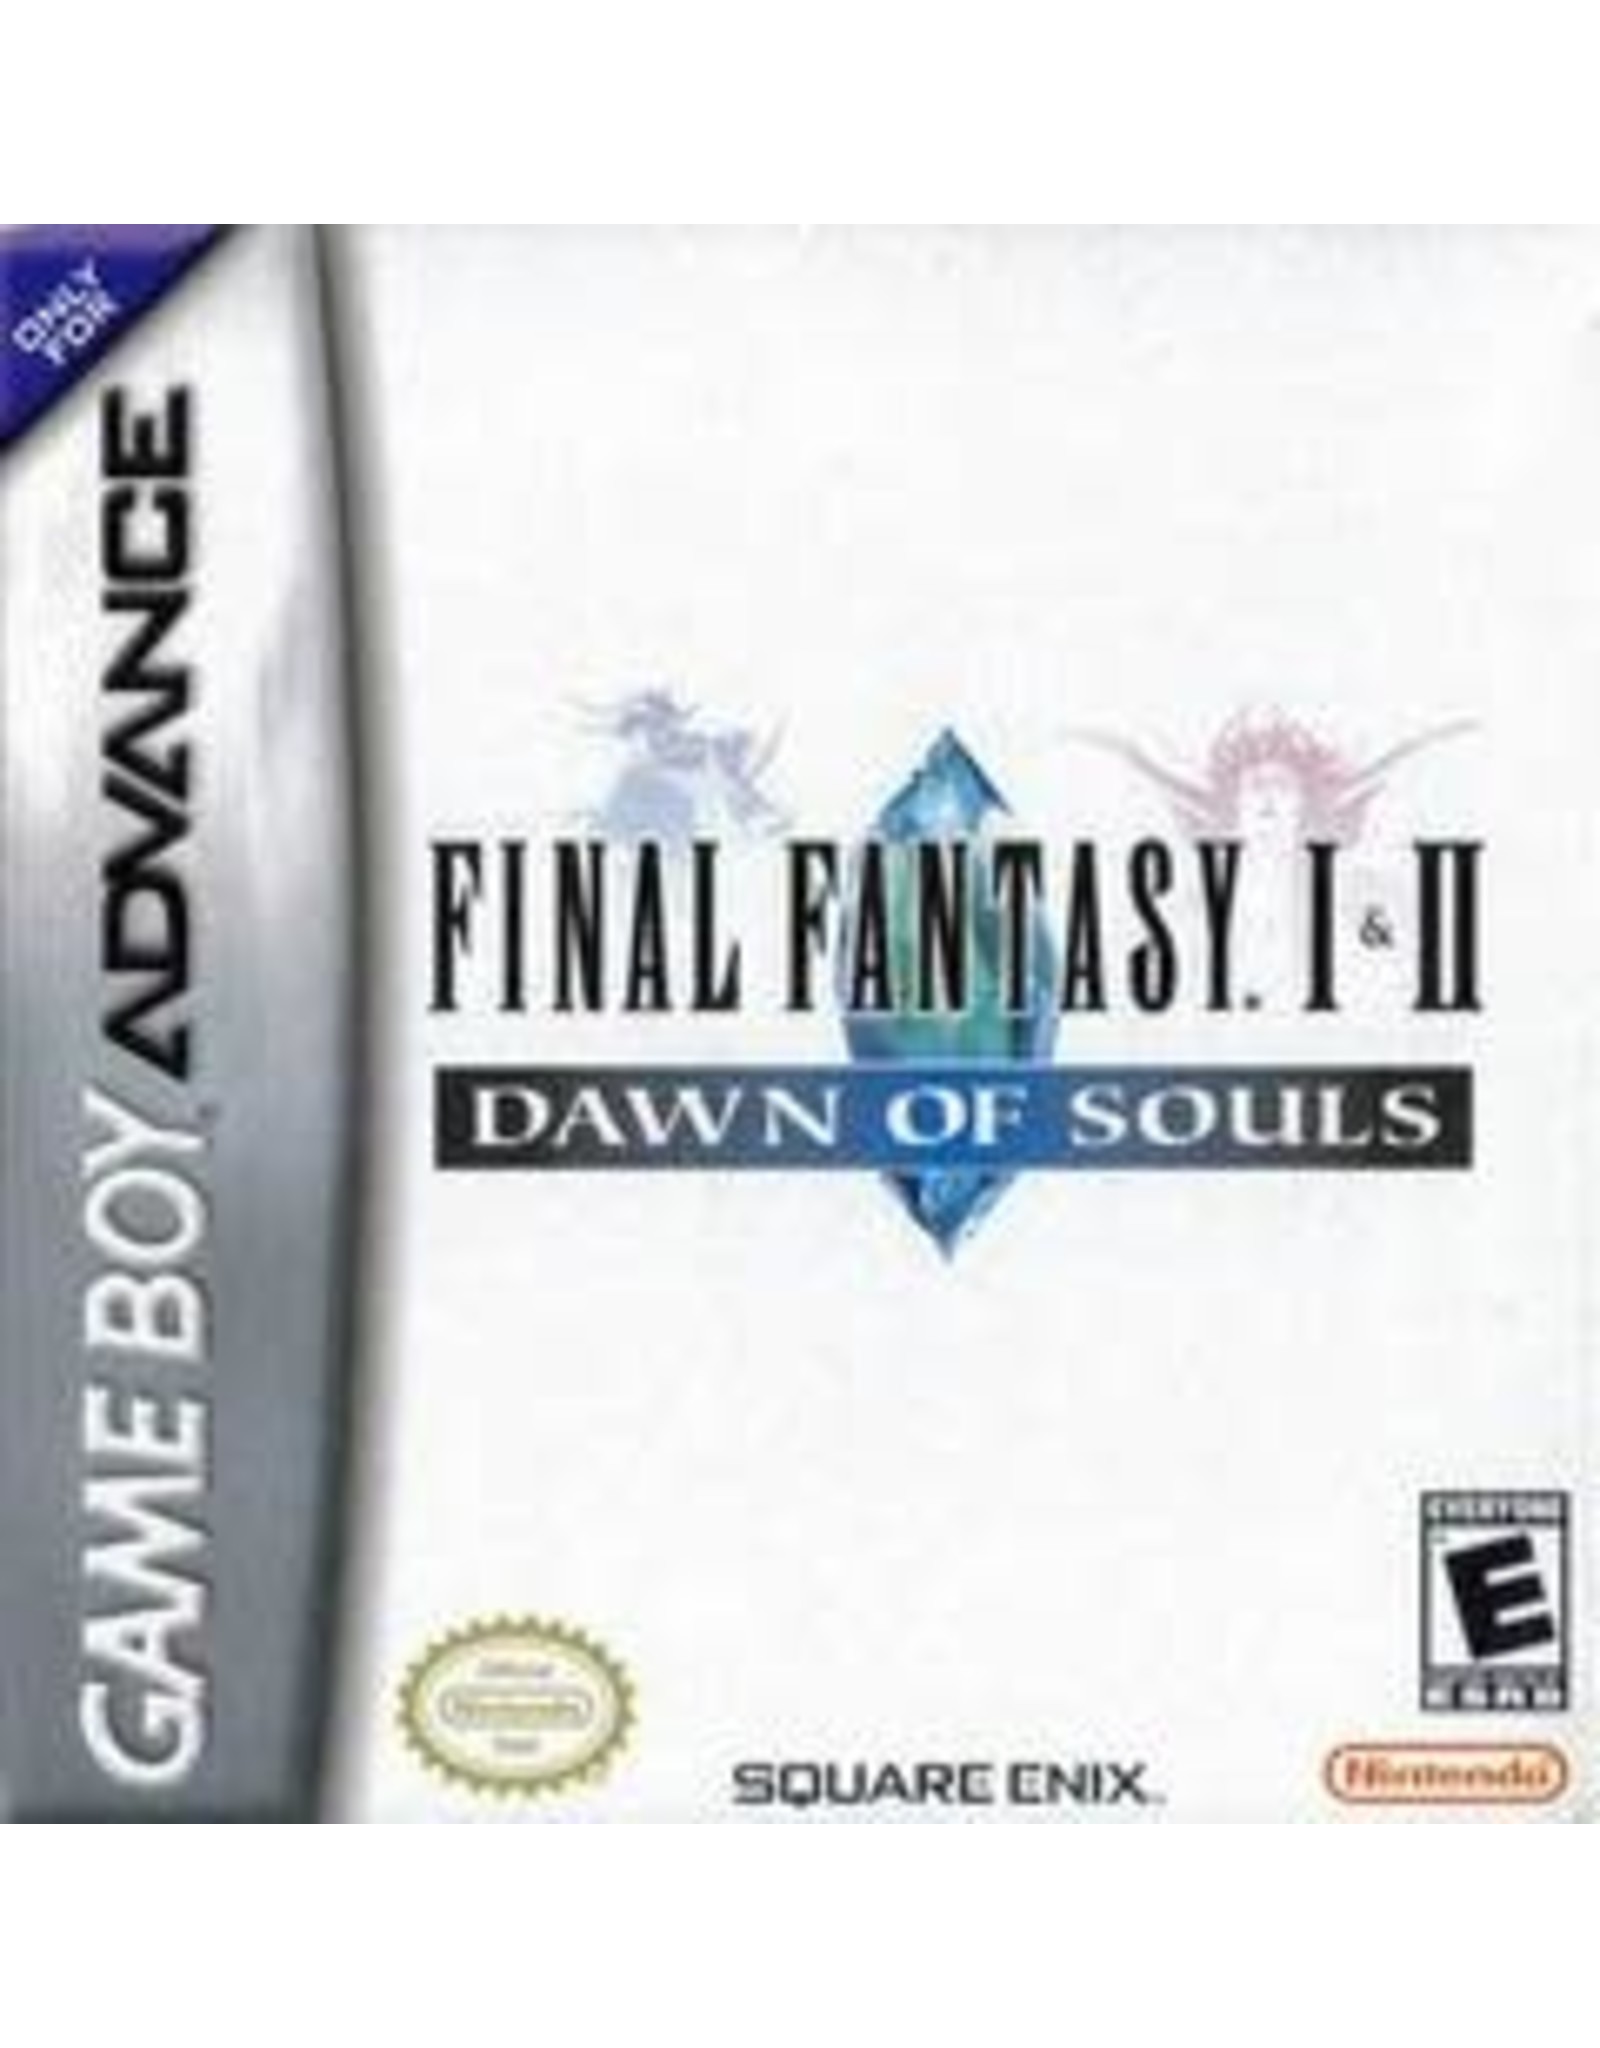 Game Boy Advance Final Fantasy I & II Dawn of Souls (CiB)